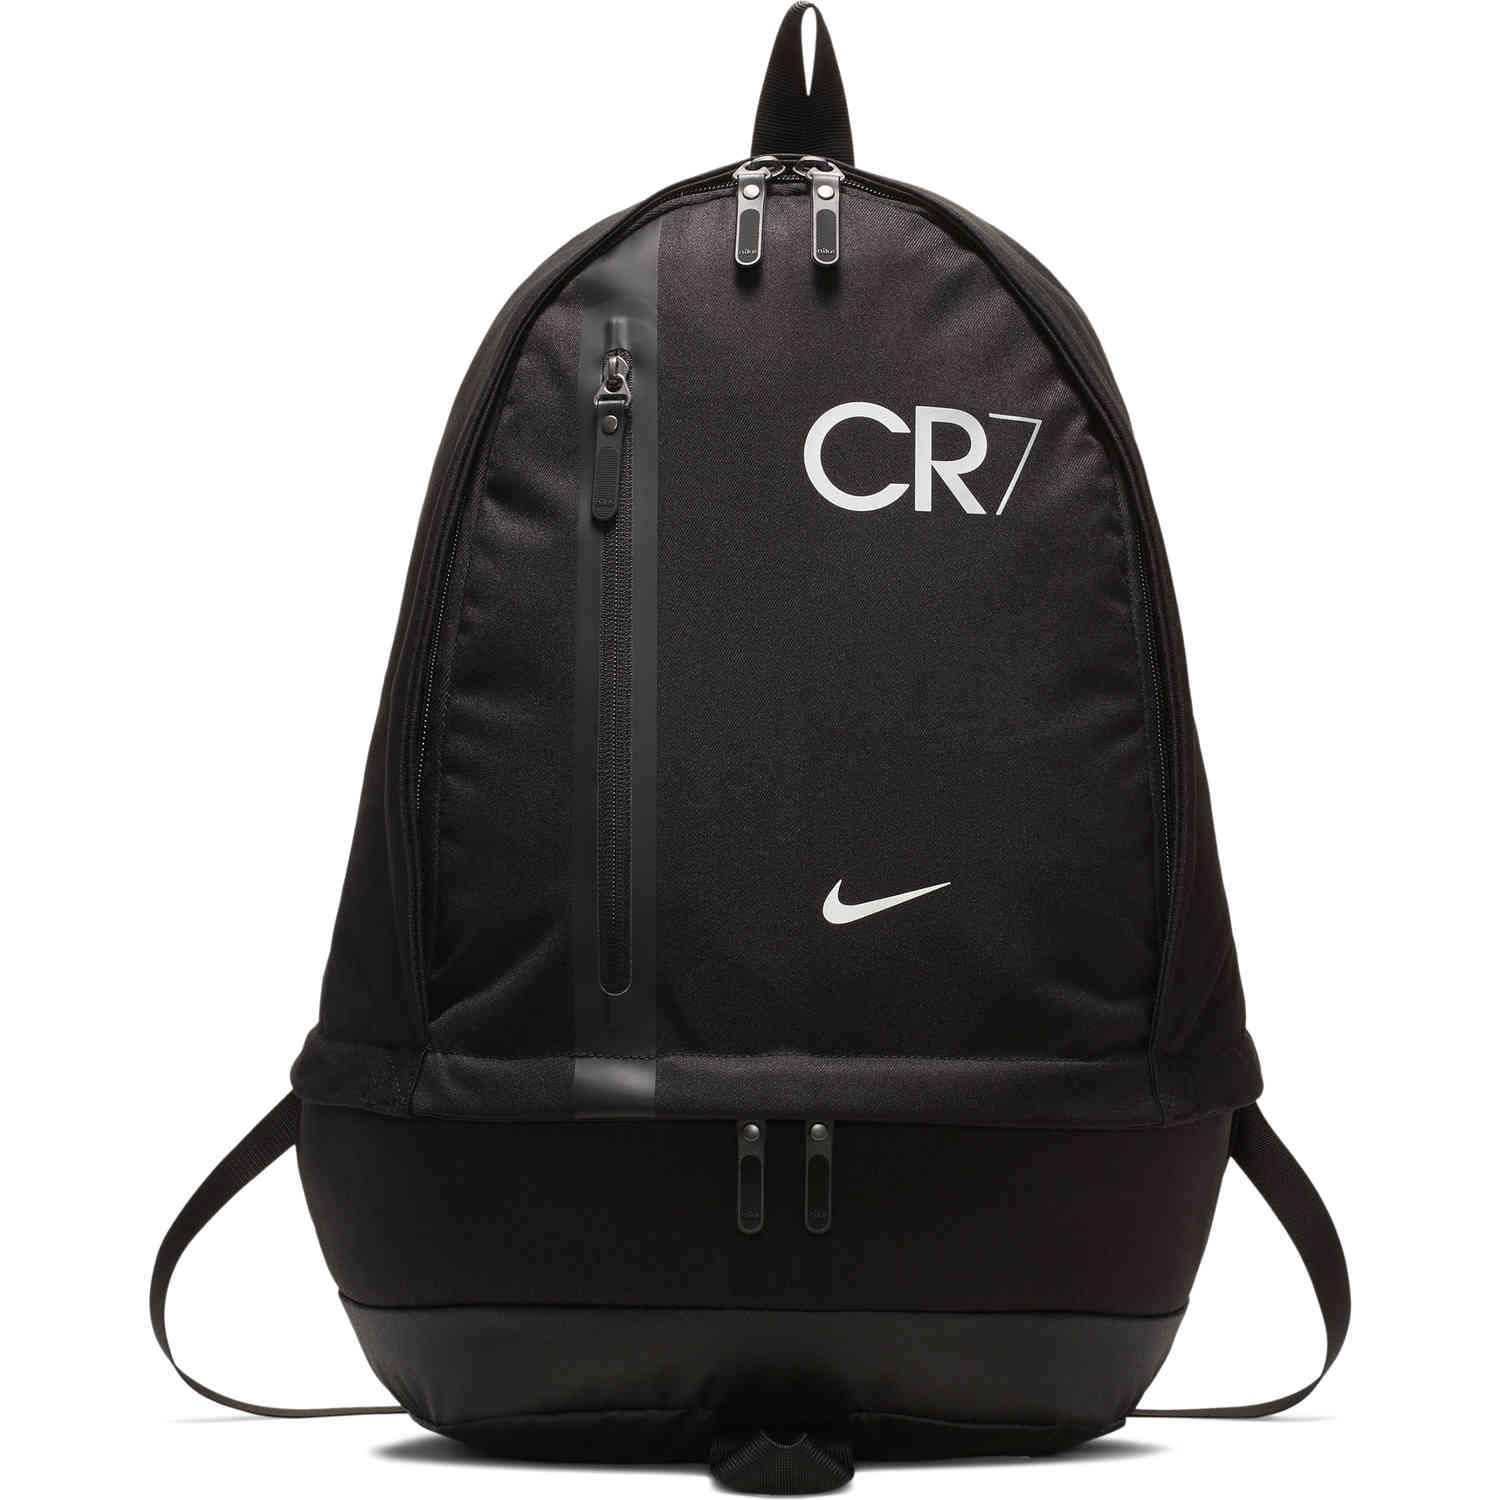 nike cr7 cheyenne soccer backpack